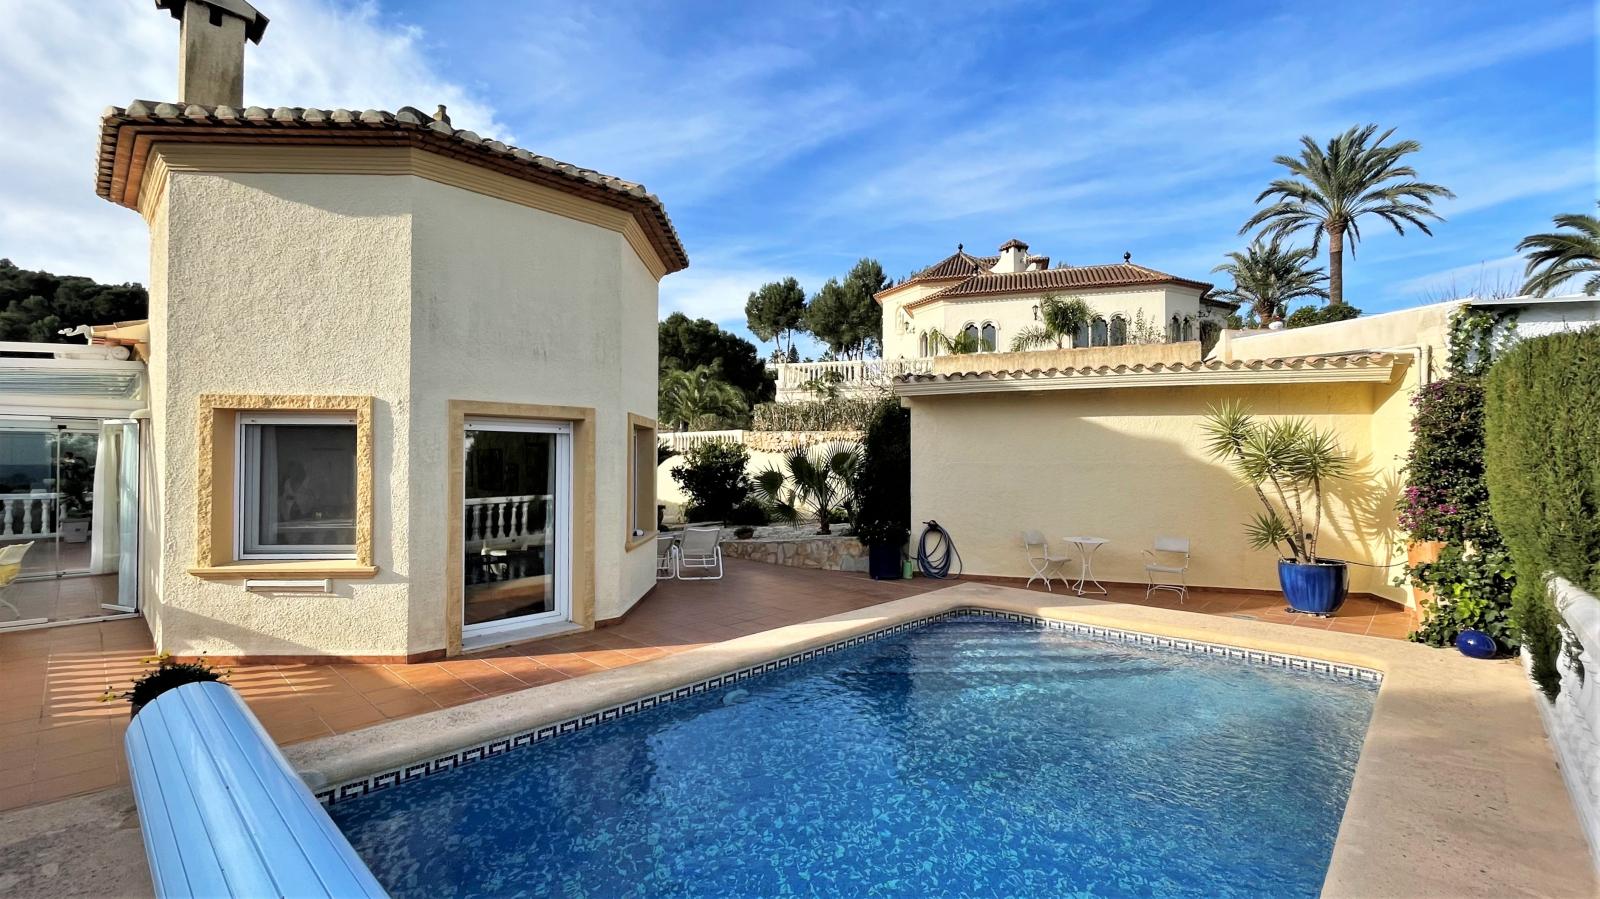 Wunderschöne Villa mit Meerblick in bevorzugter Lage, mit Fußbodenheizung, Pool, Carport, Wintergarten und vieles mehr!